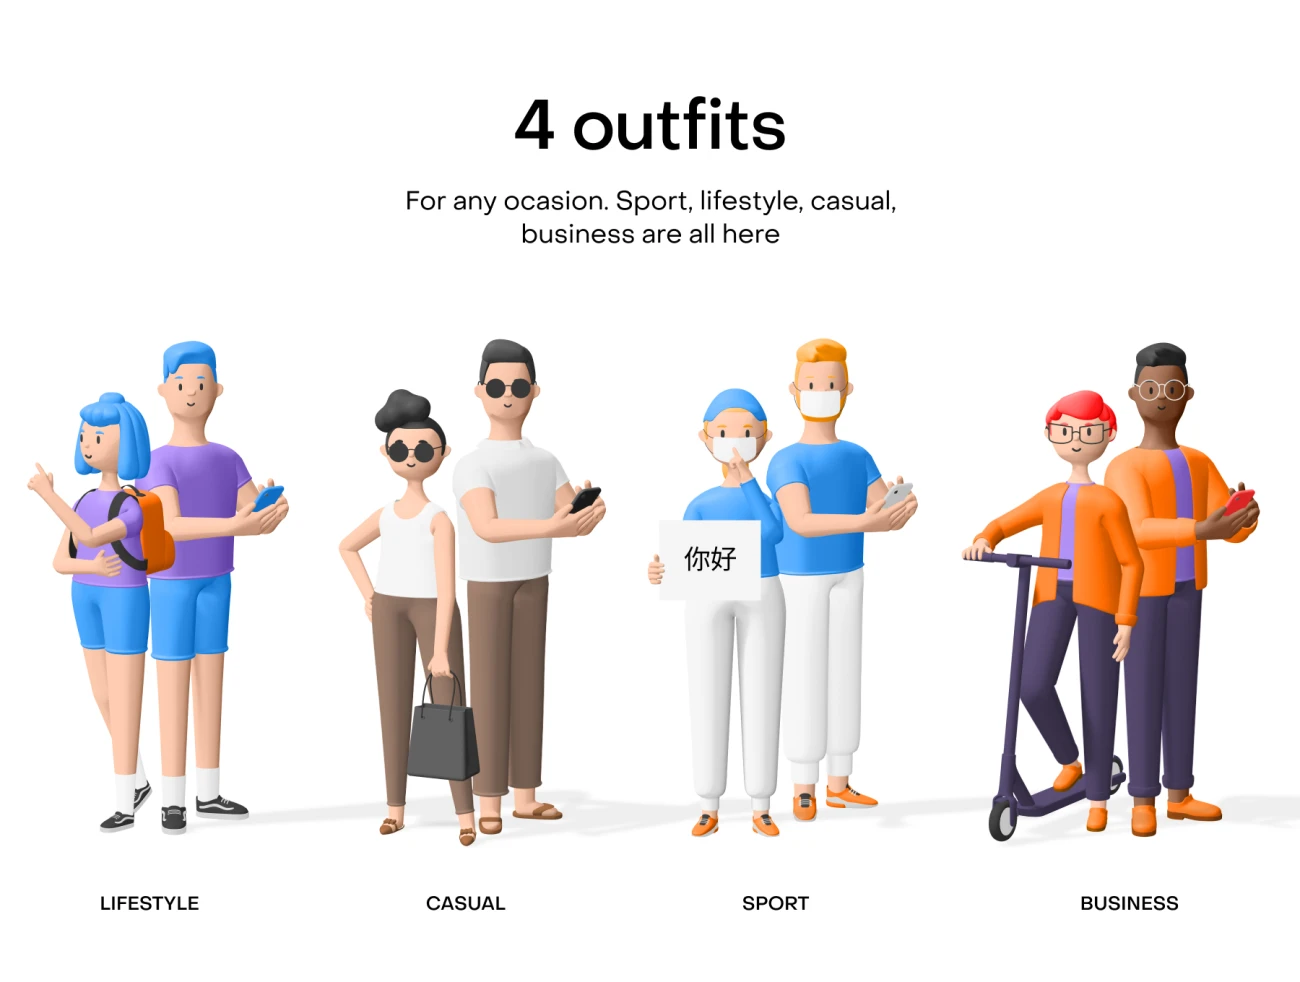 Humans 3d characters 80个3D人物角色形象包含运动居家商务便装4种着装风格-3D/图标、人物插画、人物模特、场景插画、学习生活、插画、设计元素、运动健身-到位啦UI